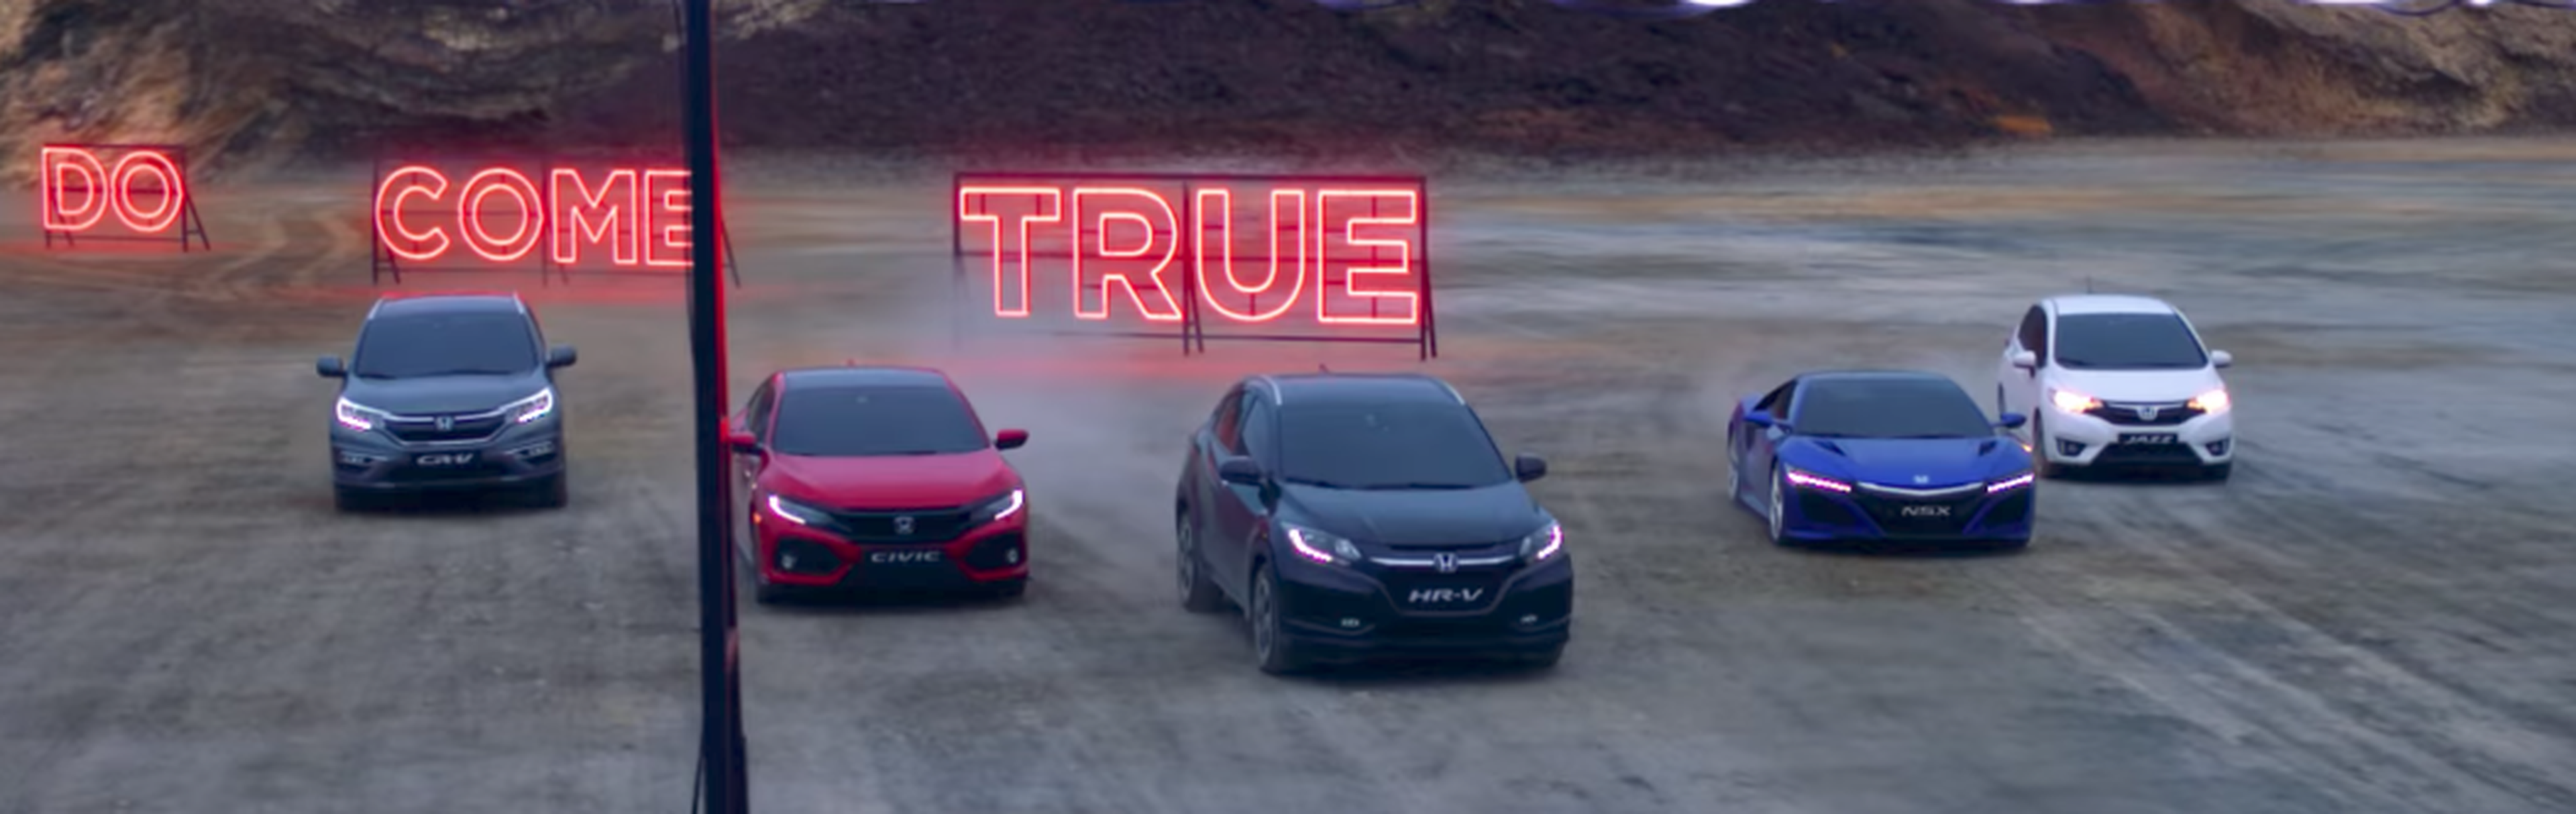 VÍDEO: Mira la gama de coches que Honda ofrece en 2017